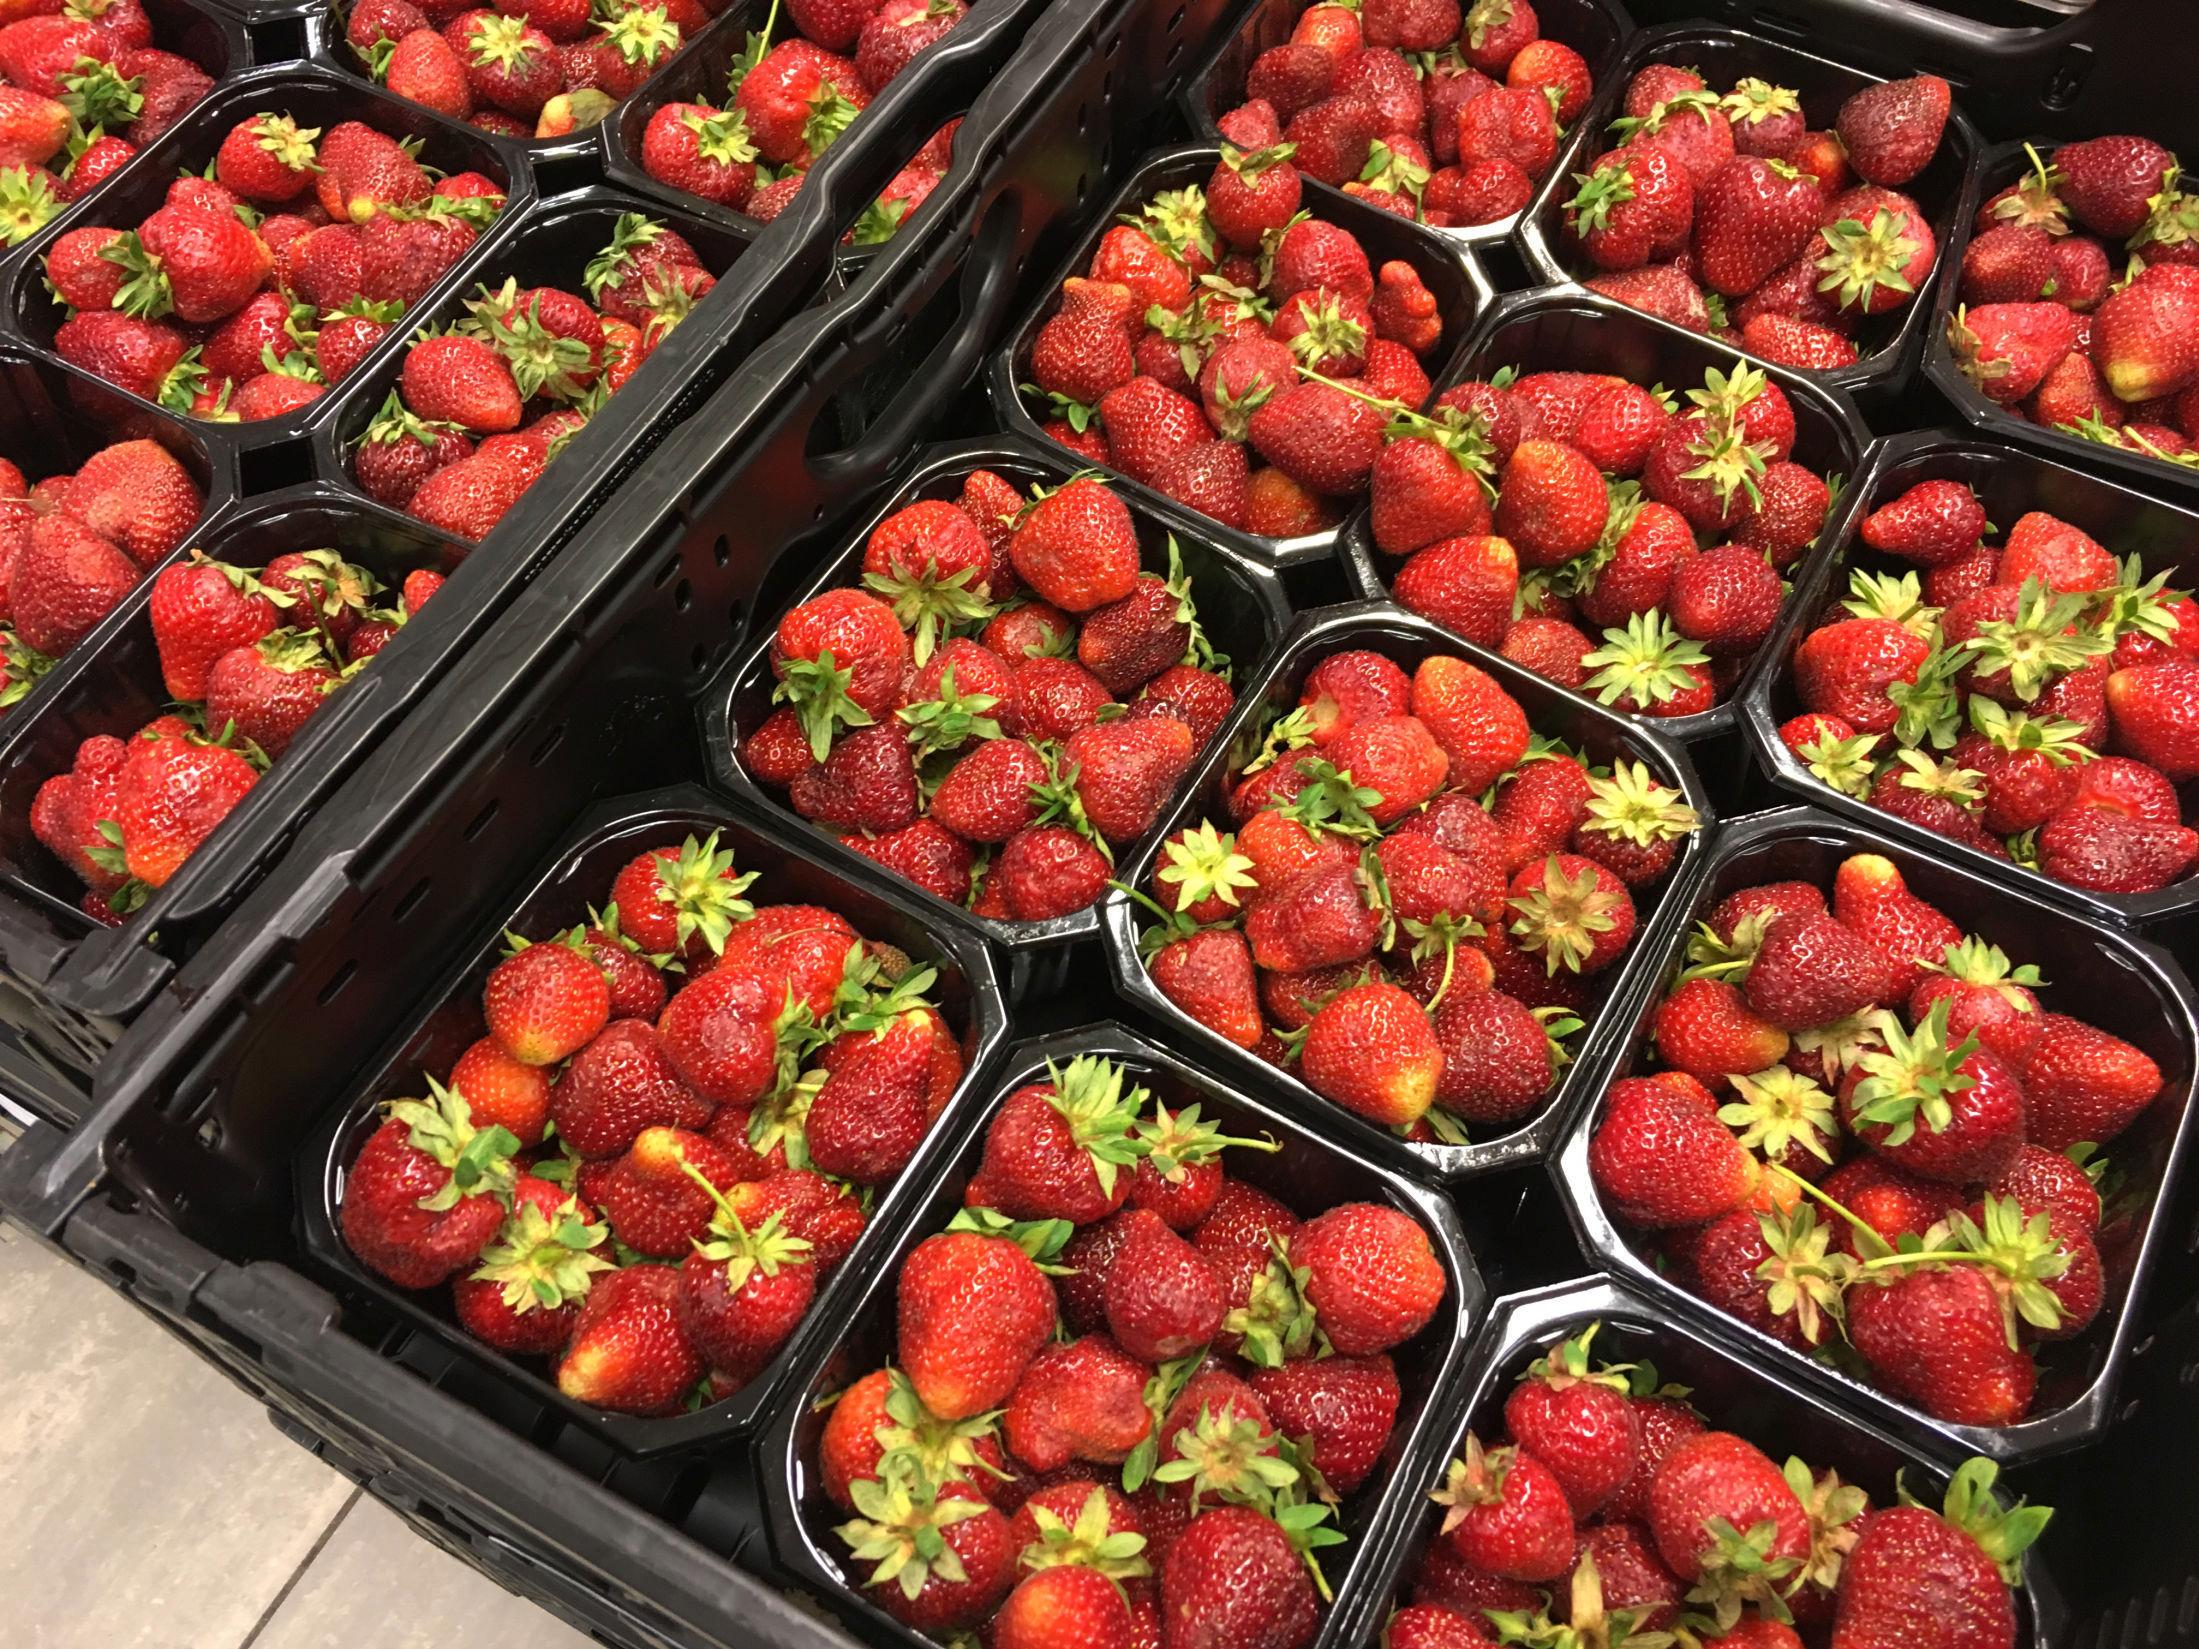 JORDBÆRSESONG: Denne uken er det meldt om to tonn jordbær til norske butikker, ifølge Landbruksdirektoratet. Når sesongen er i gang, kan det være så mye som 600 til 700 tonn på en uke. Foto: Nina Andersen, VG